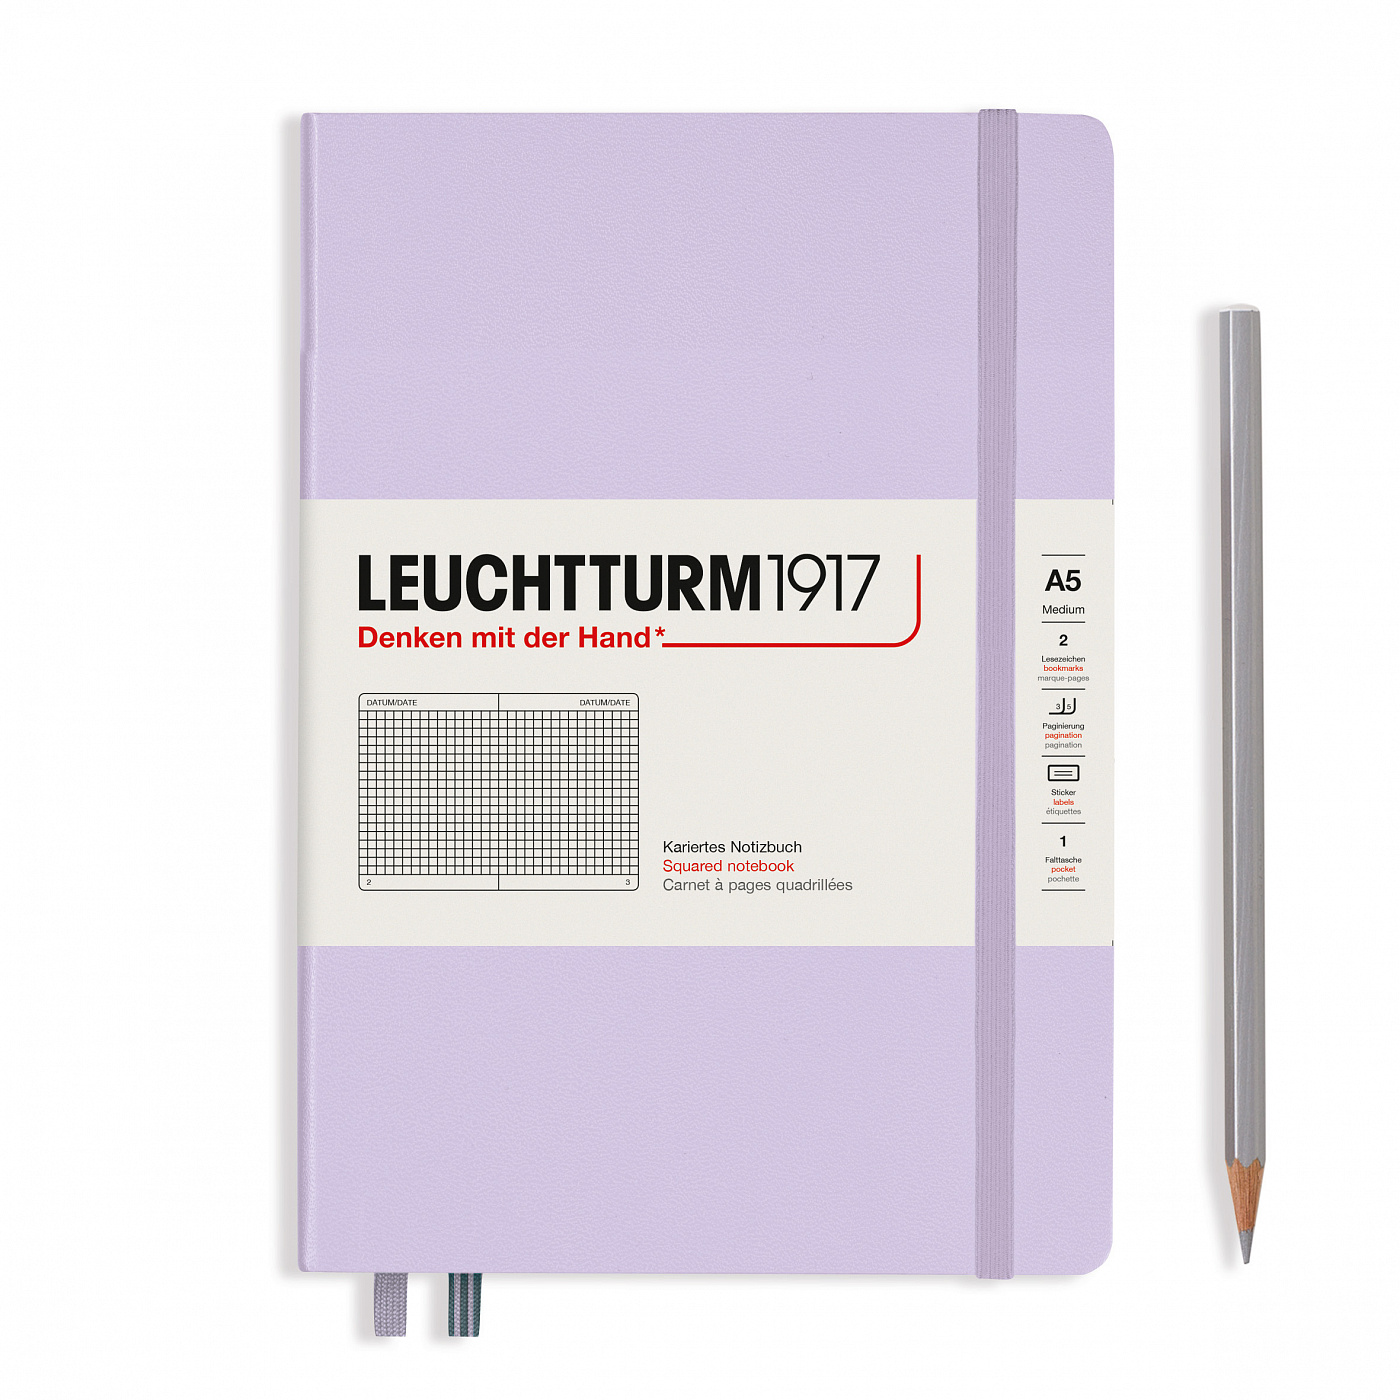 Записная книжка в клетку Leuchtturm A5 251 стр., твёрдая обложка, сиреневый теремок книжка панорама с движущимися картинками вырубка на обложке картон хромэрзац 320 г